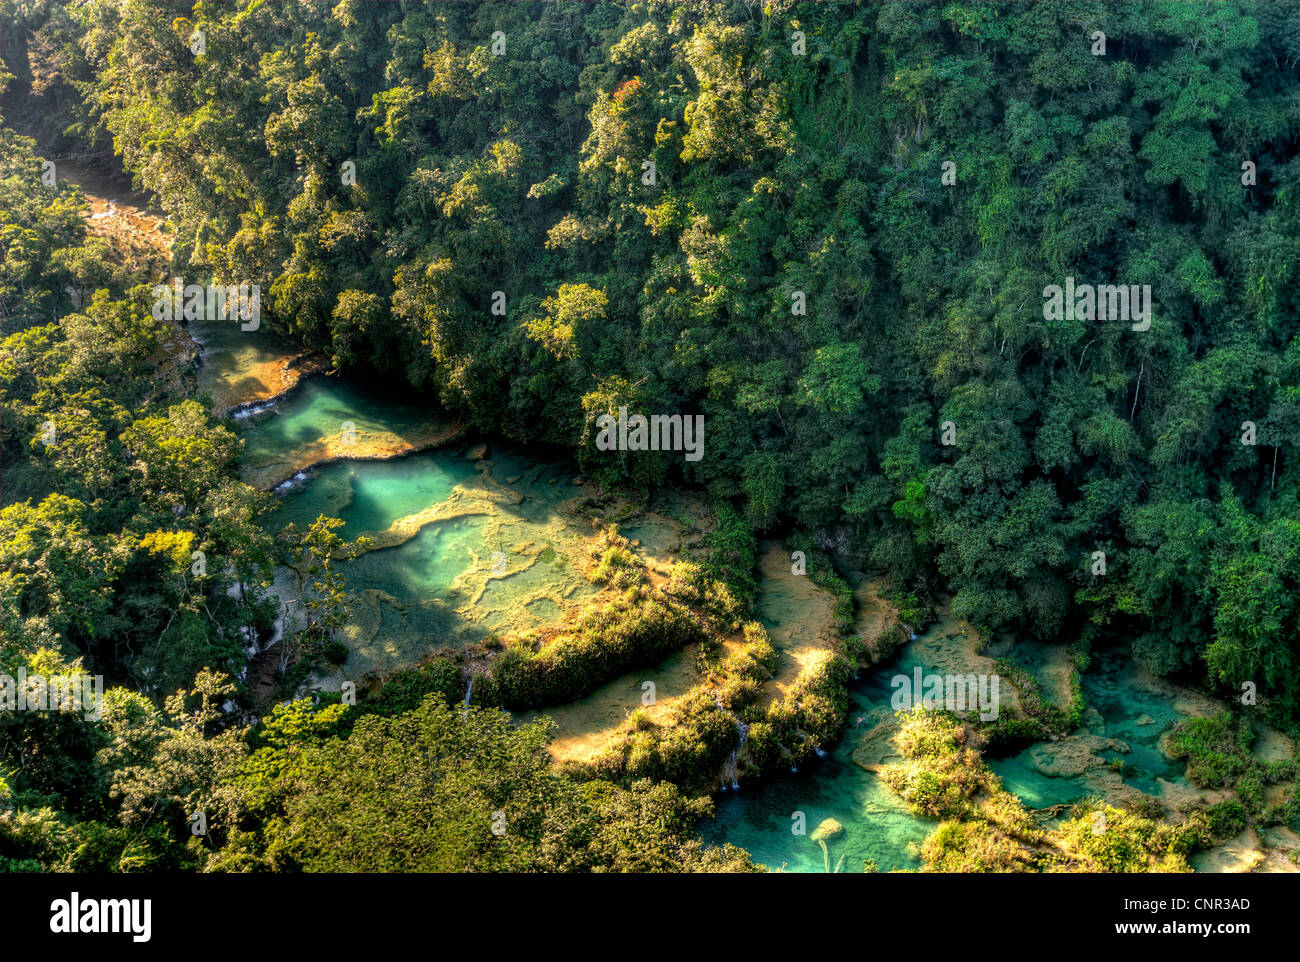 Les cascades et bassins de travertin Semuc Champey sont parmi les plus spectaculaires du Guatemala merveilles naturelles. Banque D'Images